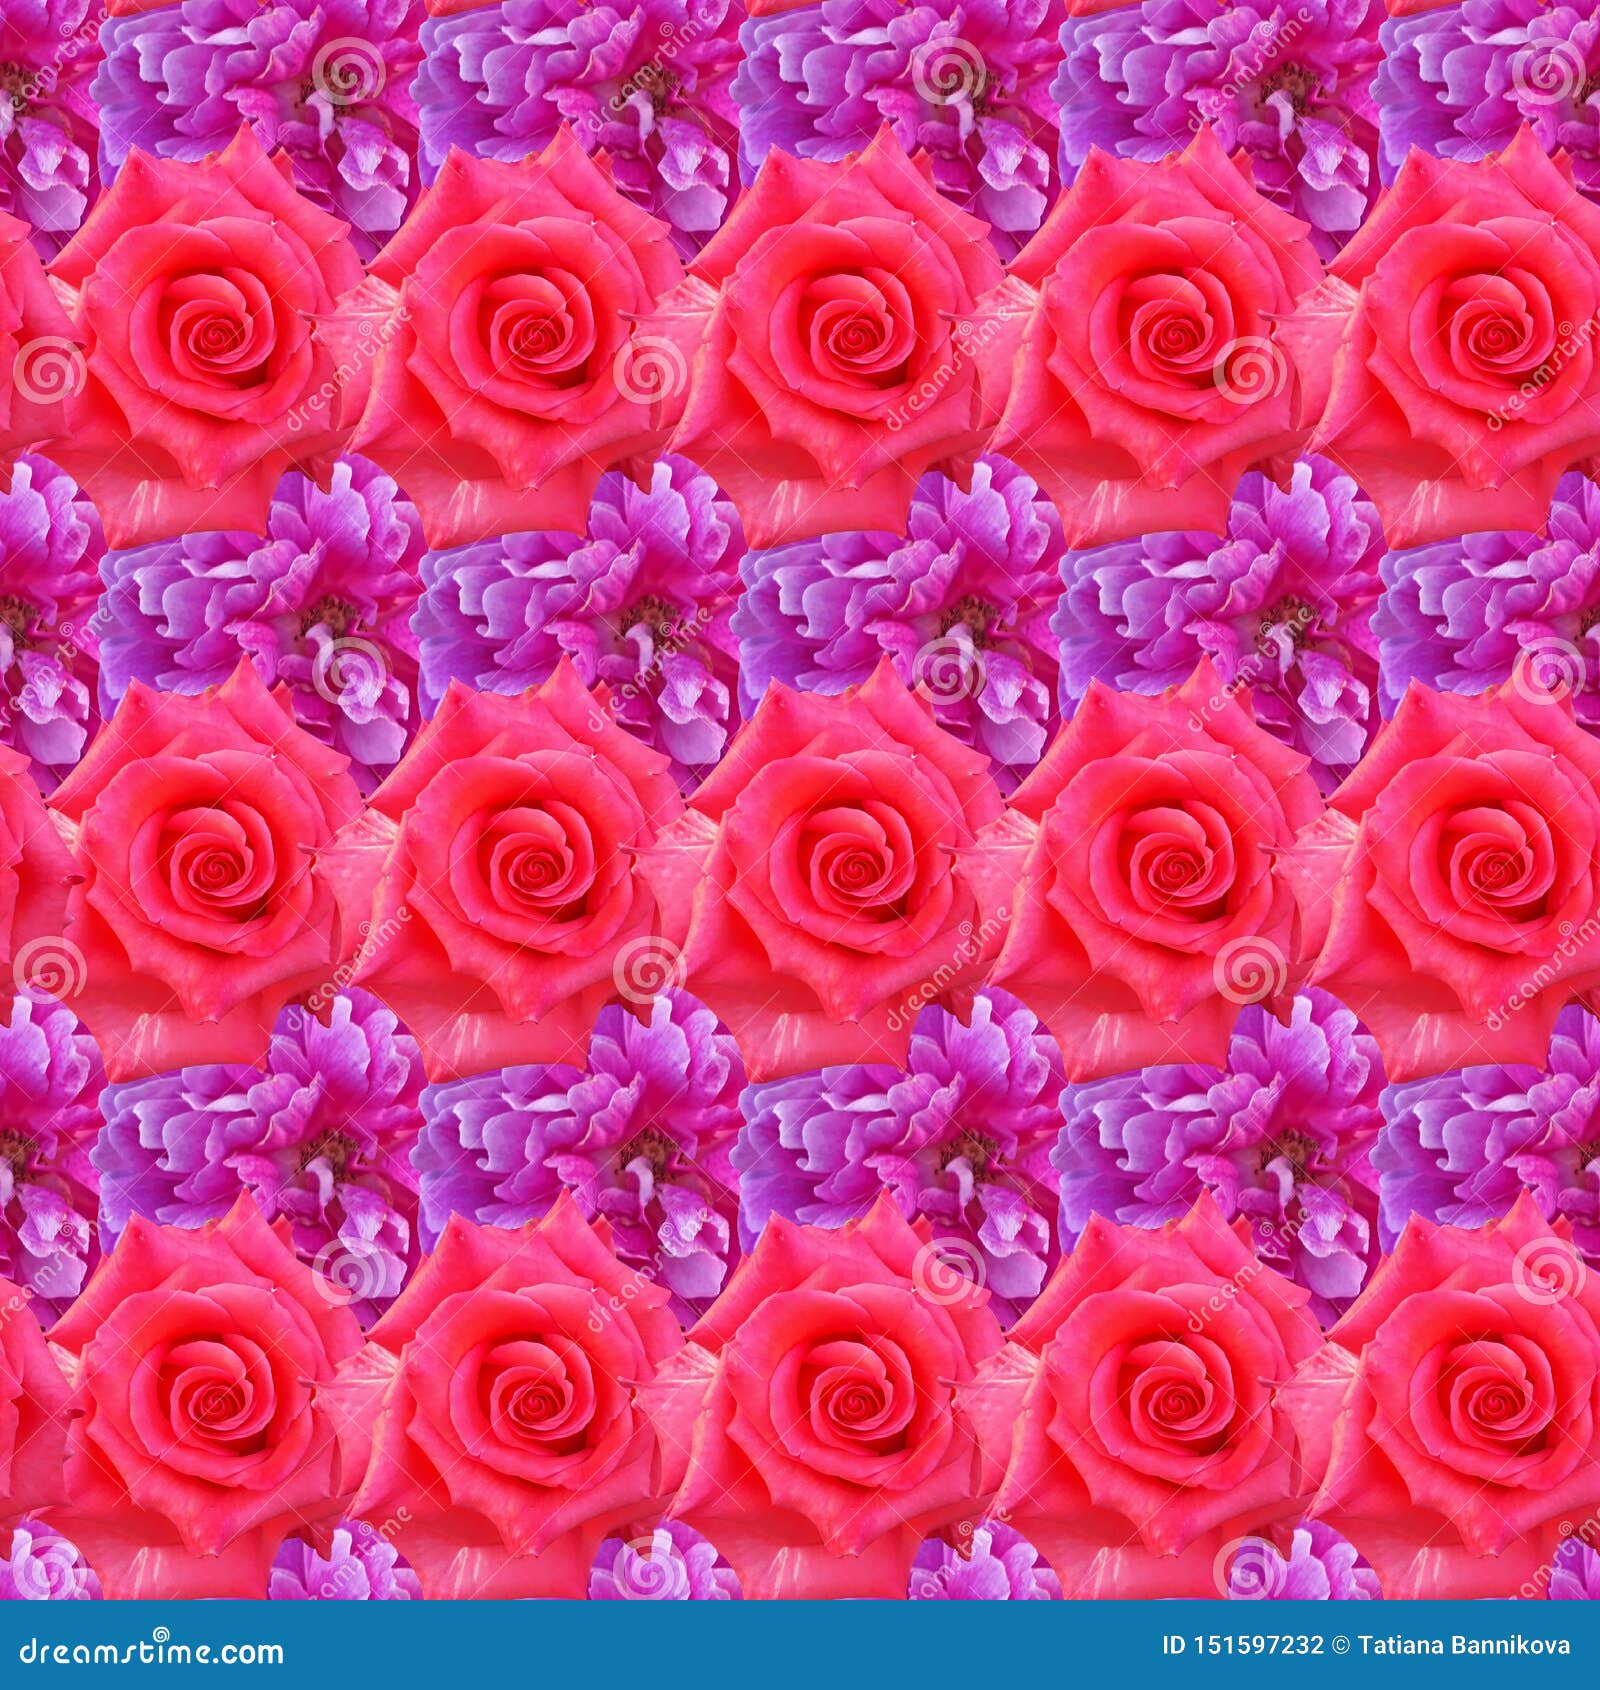 Một bức ảnh sắc nét của những bông hoa hồng đầy màu sắc thật đẹp mắt. Hãy đắm chìm trong khung cảnh đầy màu sắc và những cánh hoa tươi tắn, tạo nên một không gian sống động và ấm áp cho ngôi nhà của bạn.